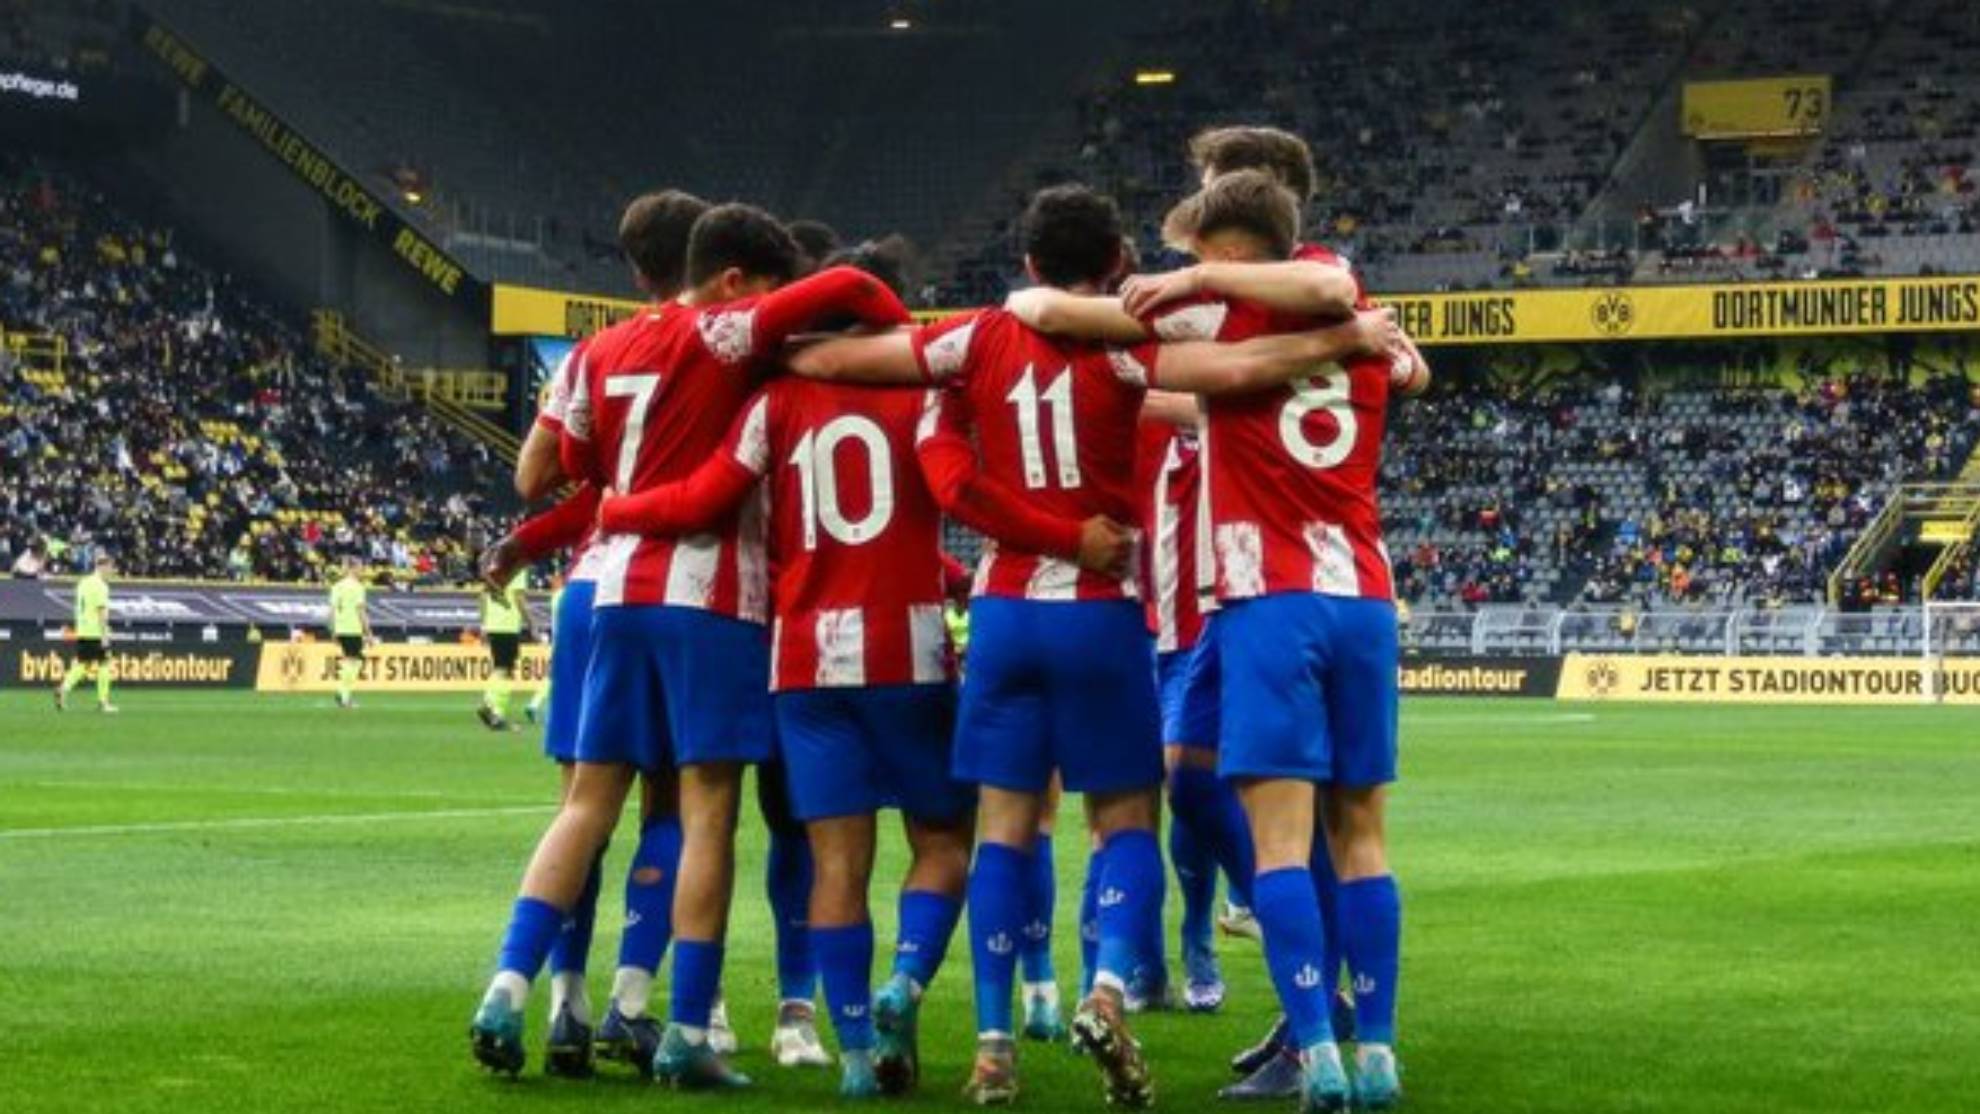 El juvenil del Atlético se abraza en el partido contra el Borussia Dortmund.